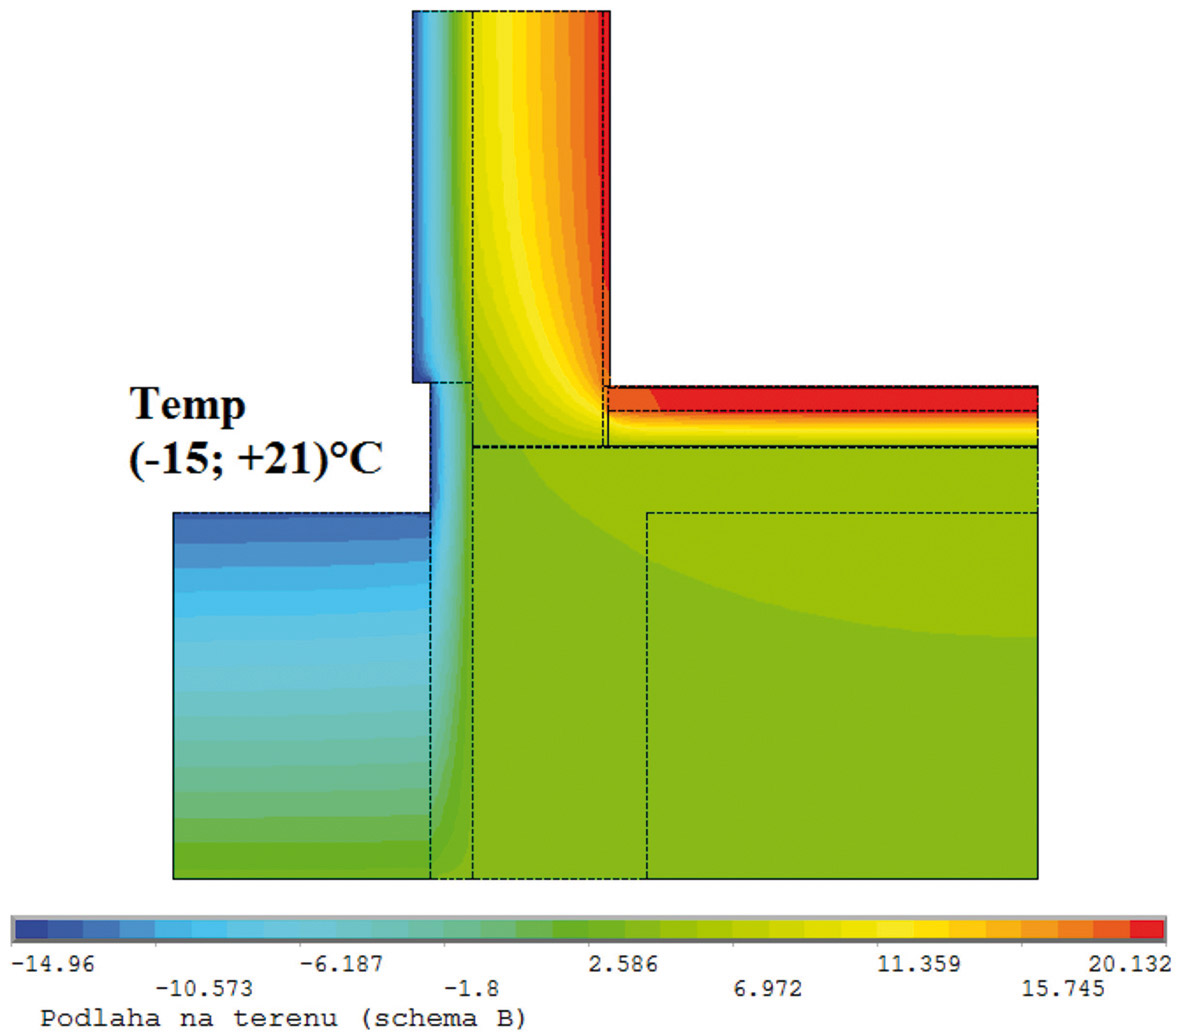 Hodnotícím kritériem je nejnižší vnitřní povrchová teplota a nejnižší teplotní faktor (fRSI) ve styku podlahy se stěnou pro teplotu v interiéru 21°C a v exteriéru pro teploty -13°C, -15°C, -17°C.